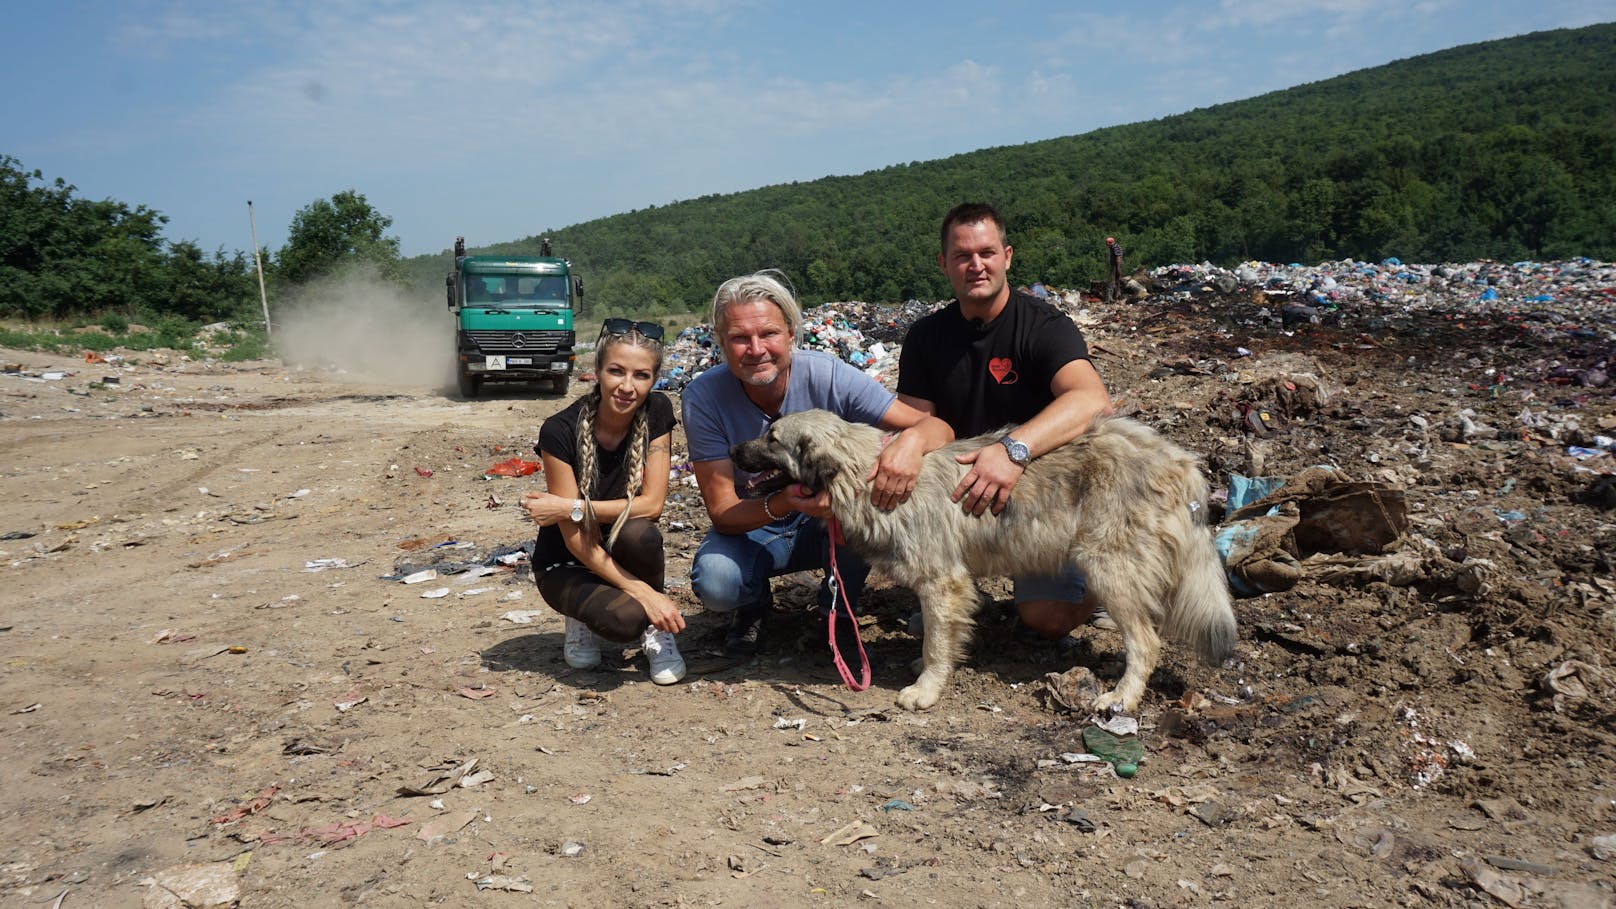 Nun wurde das deutsche Fernsehen auf den steirischen Tierschutzverein aufmerksam. Frank Weber von&nbsp;"hundkatzemaus" begleitete das Paar auf den Straßen von&nbsp;Bihac auf die Mülldeponie und in die Pflegestationen.